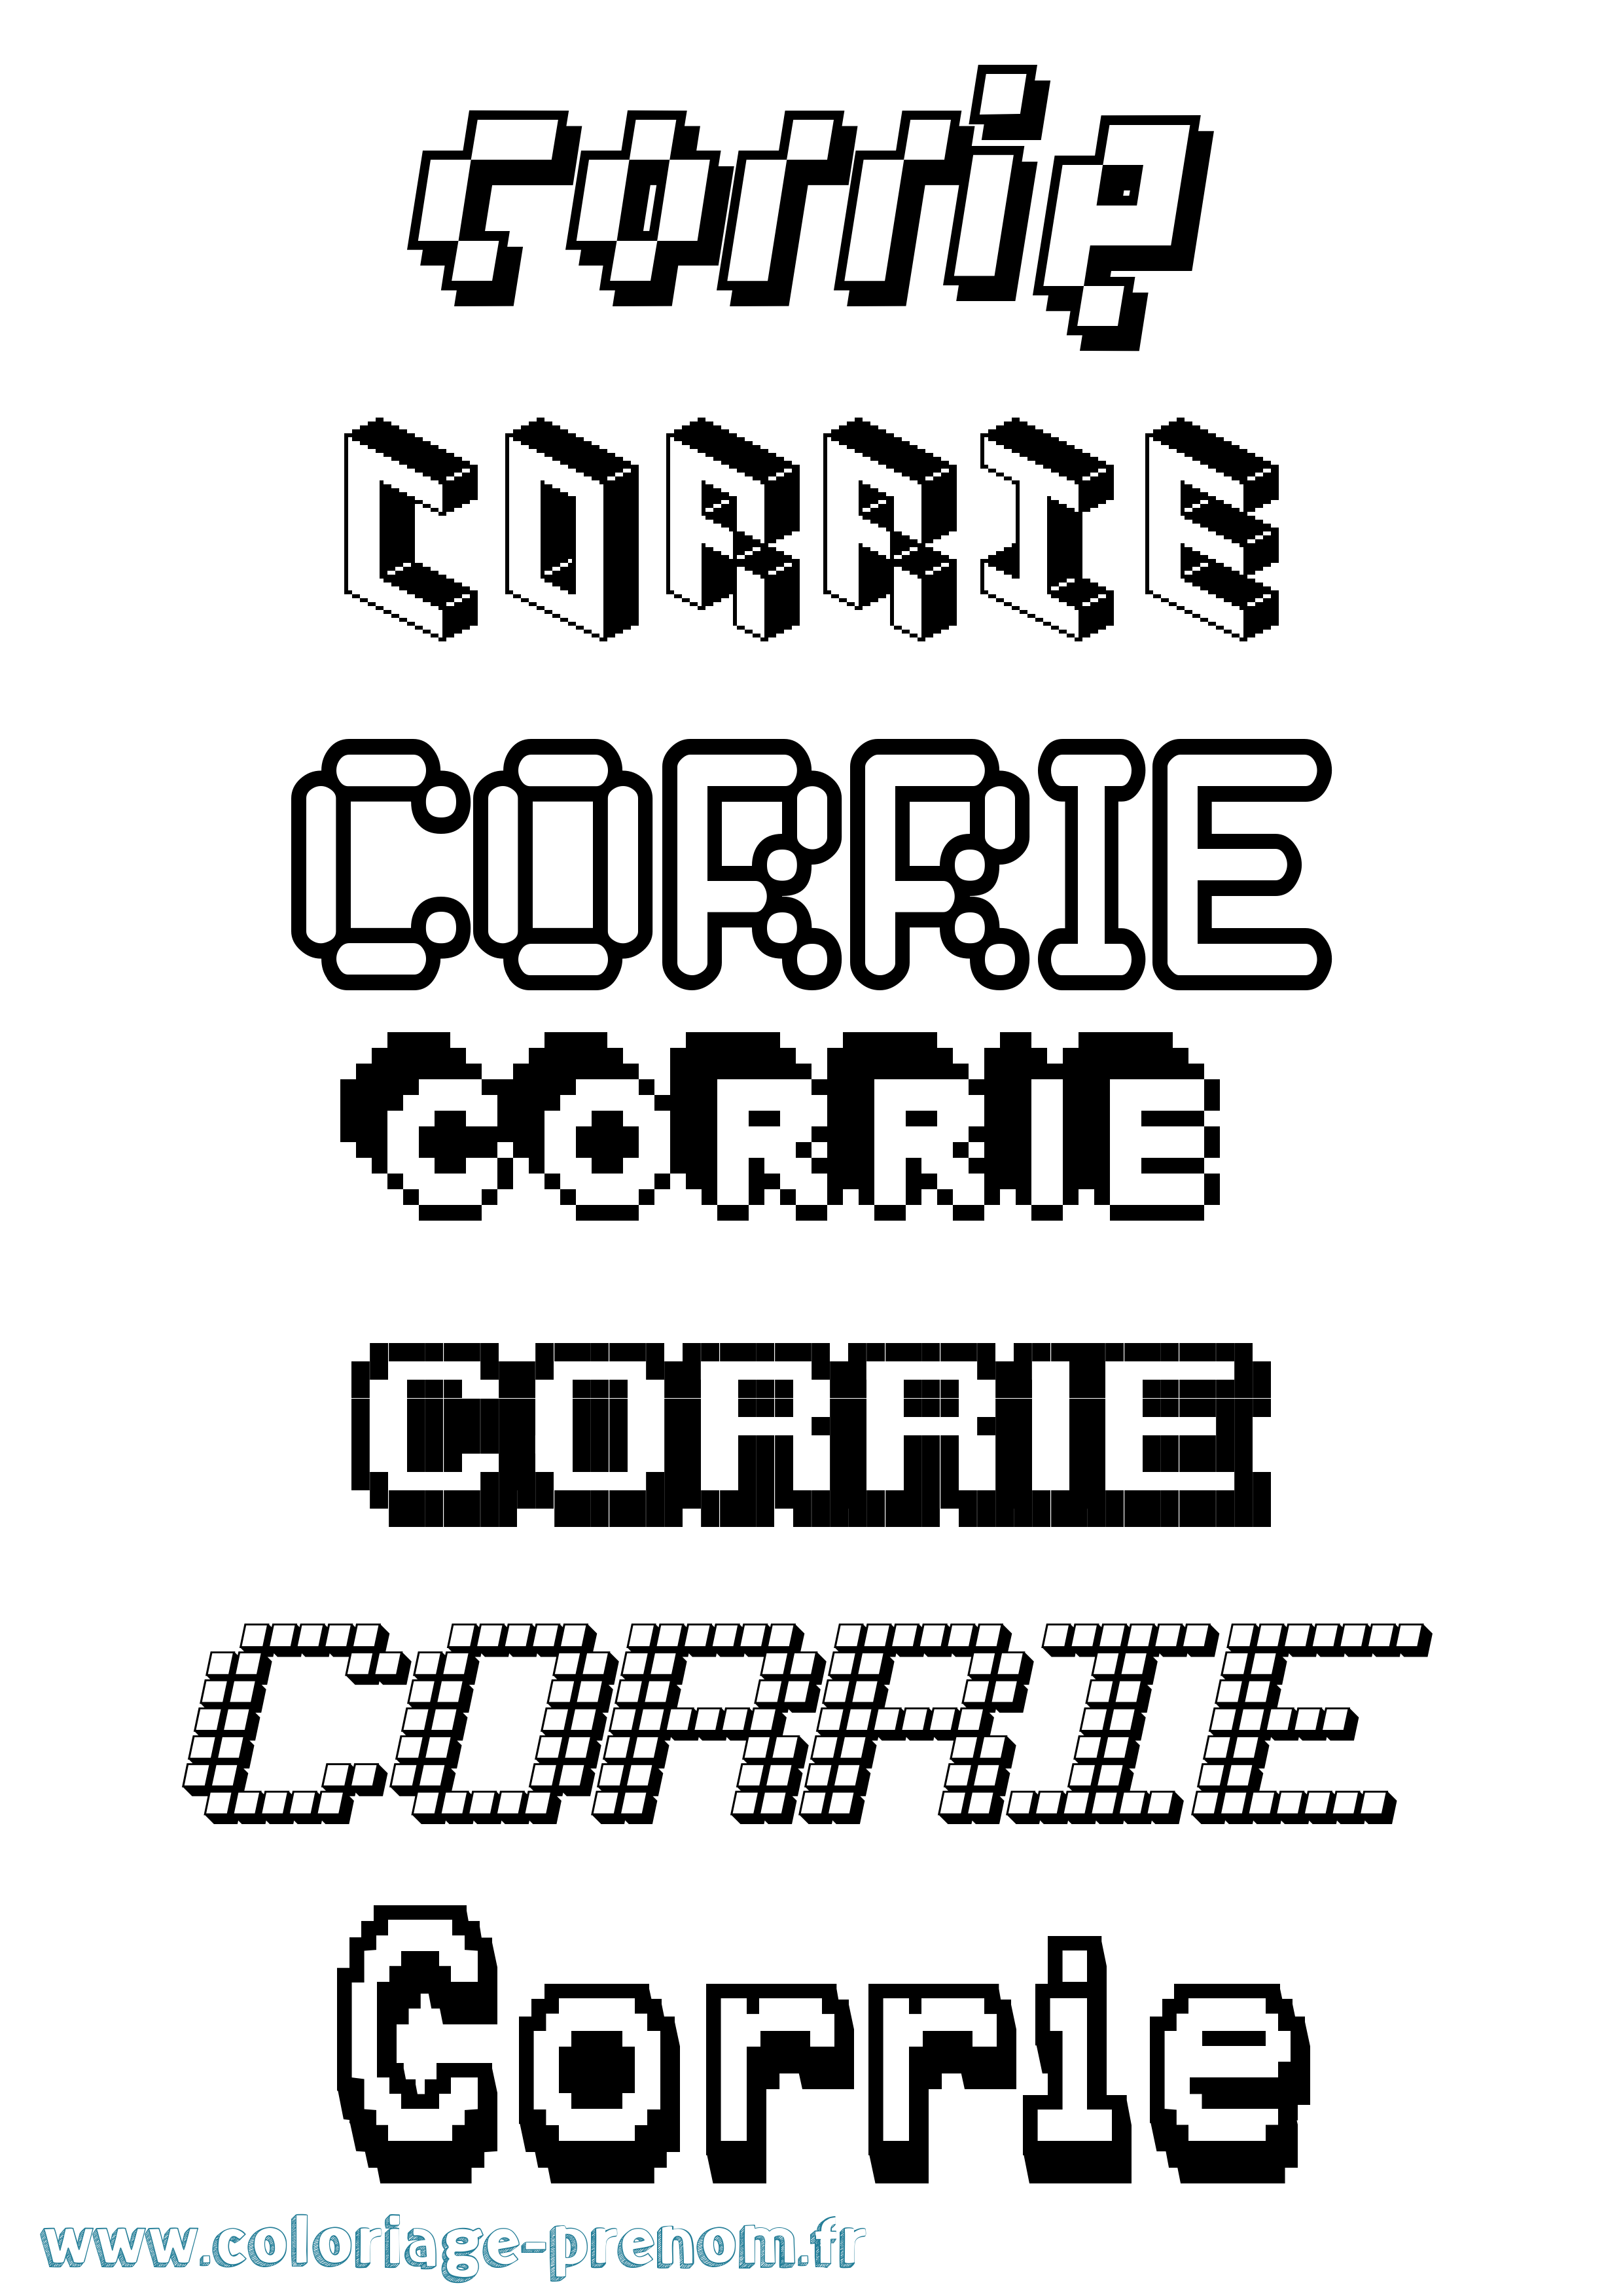 Coloriage prénom Corrie Pixel